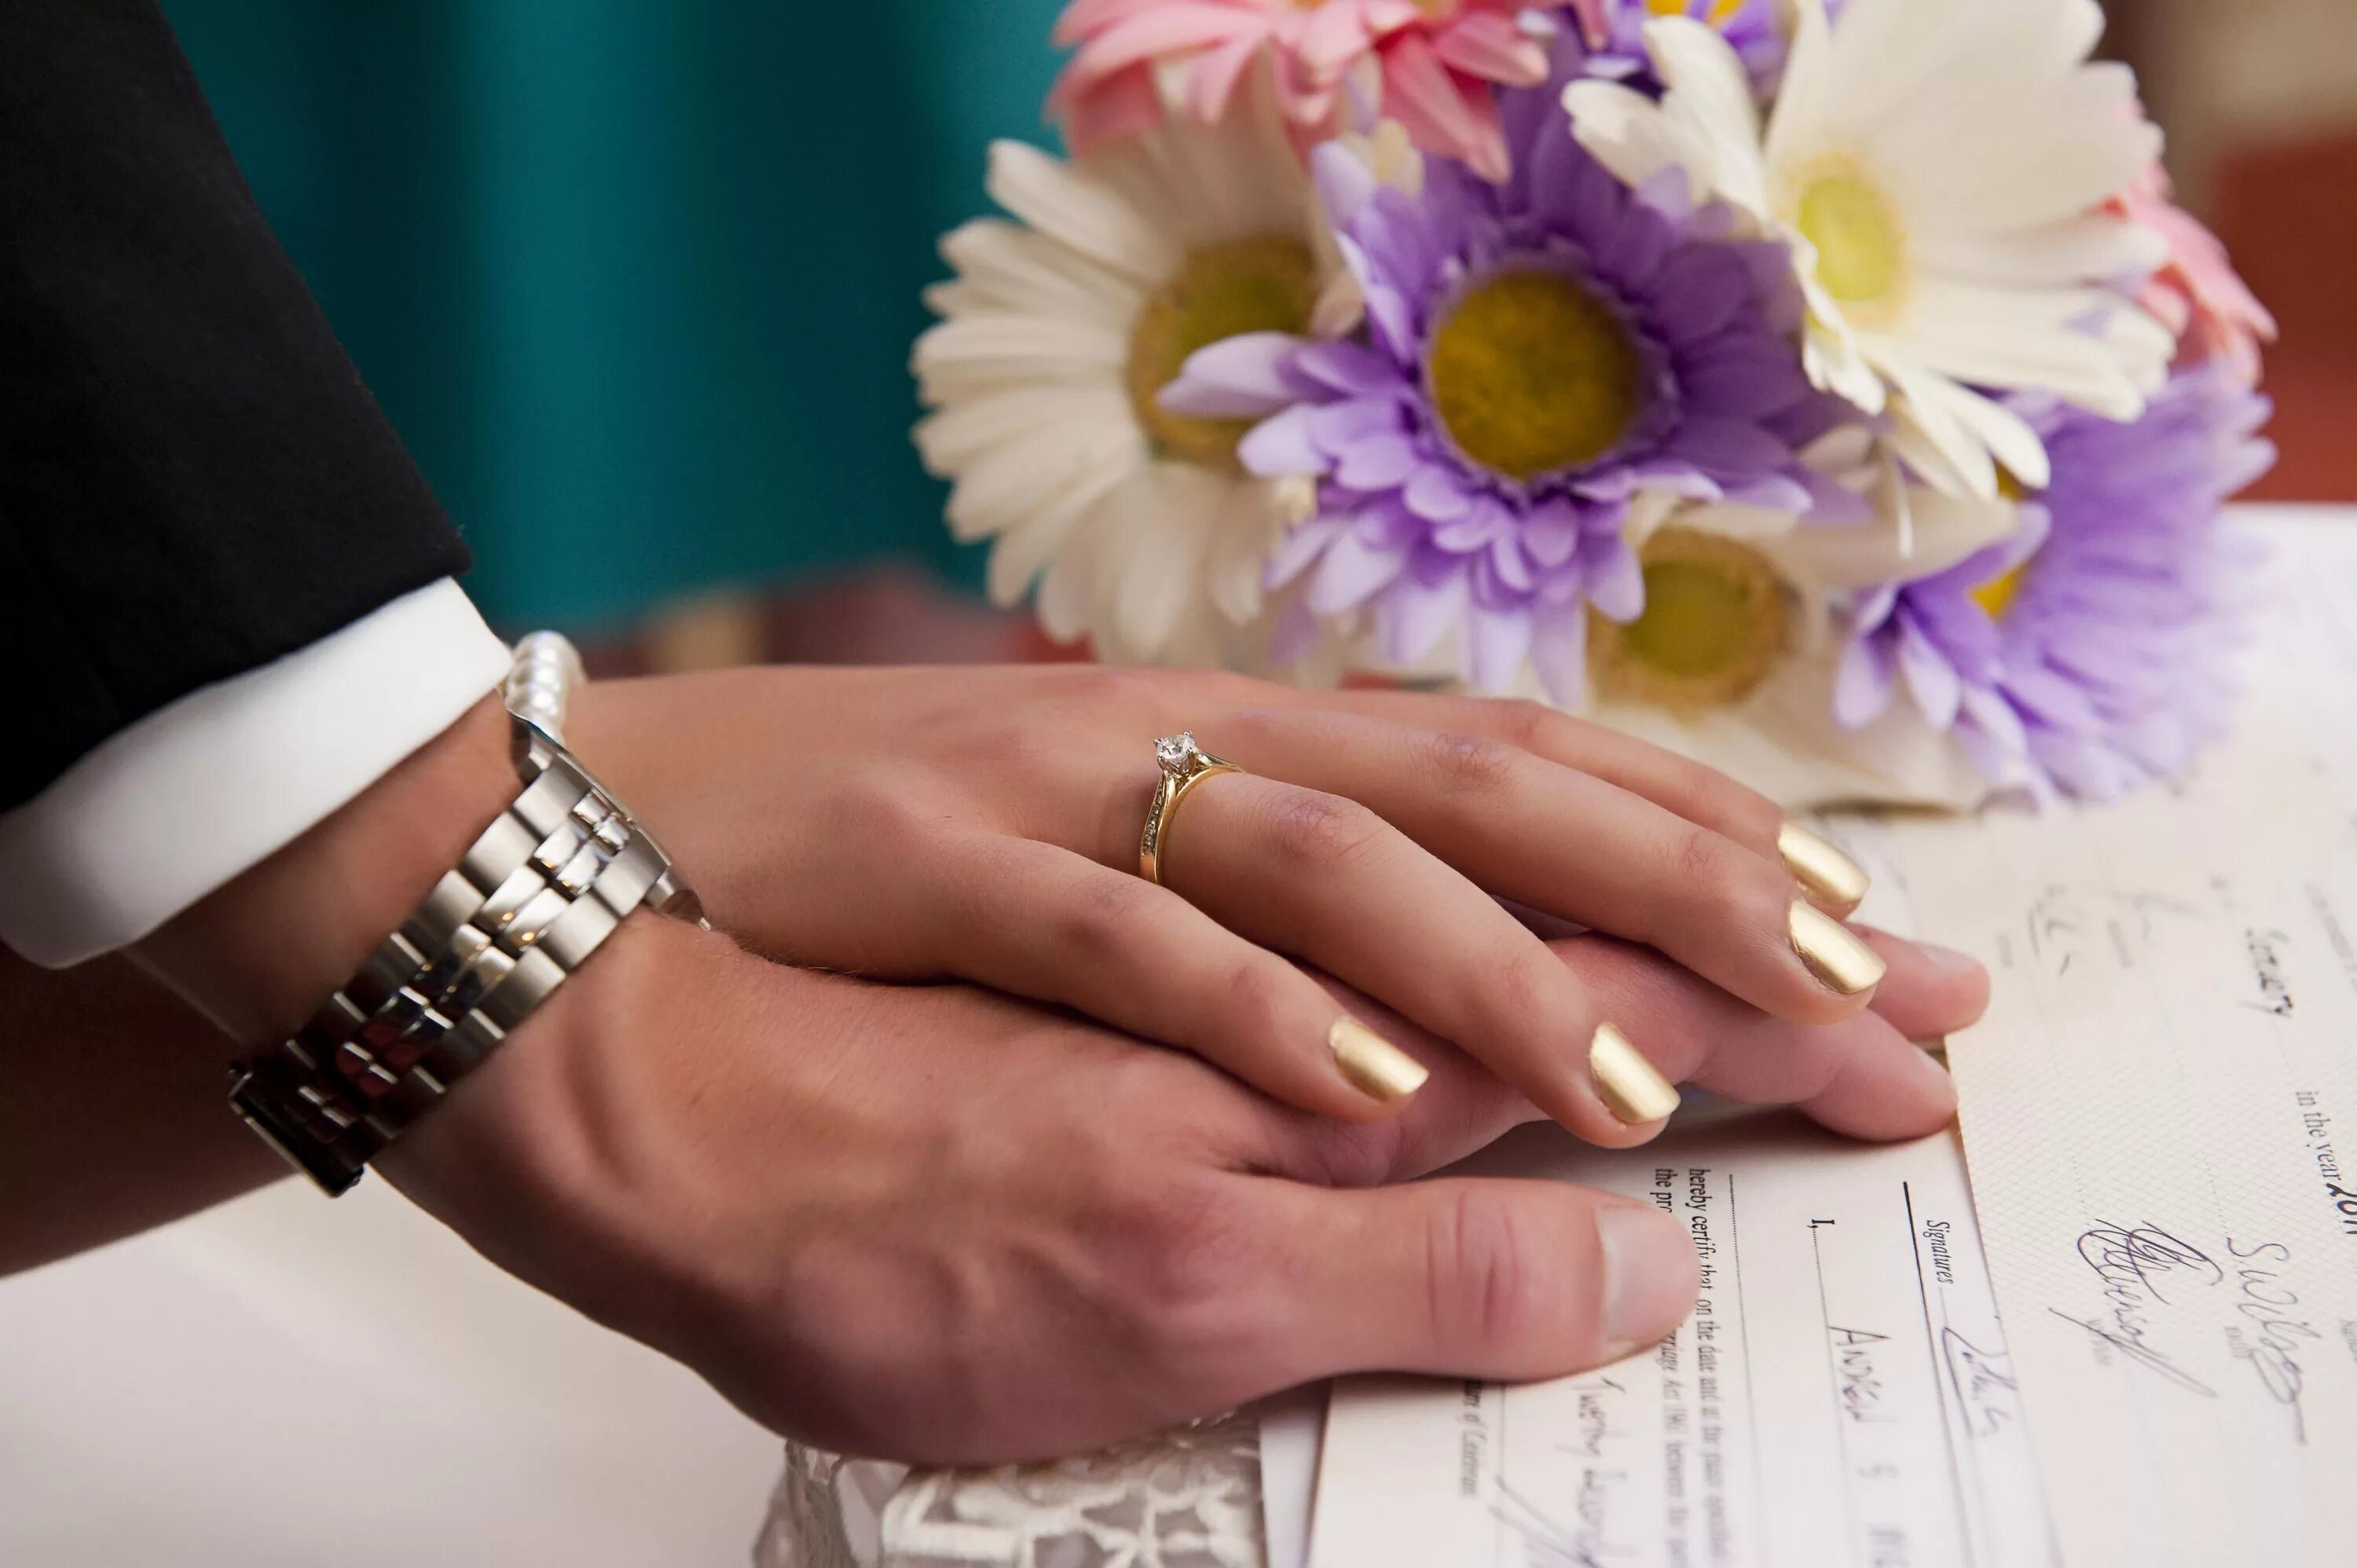 ЗАГС кольца. Свадебные кольца в ЗАГСЕ. Красивые ногти на регистрацию брака. Подписание брака.